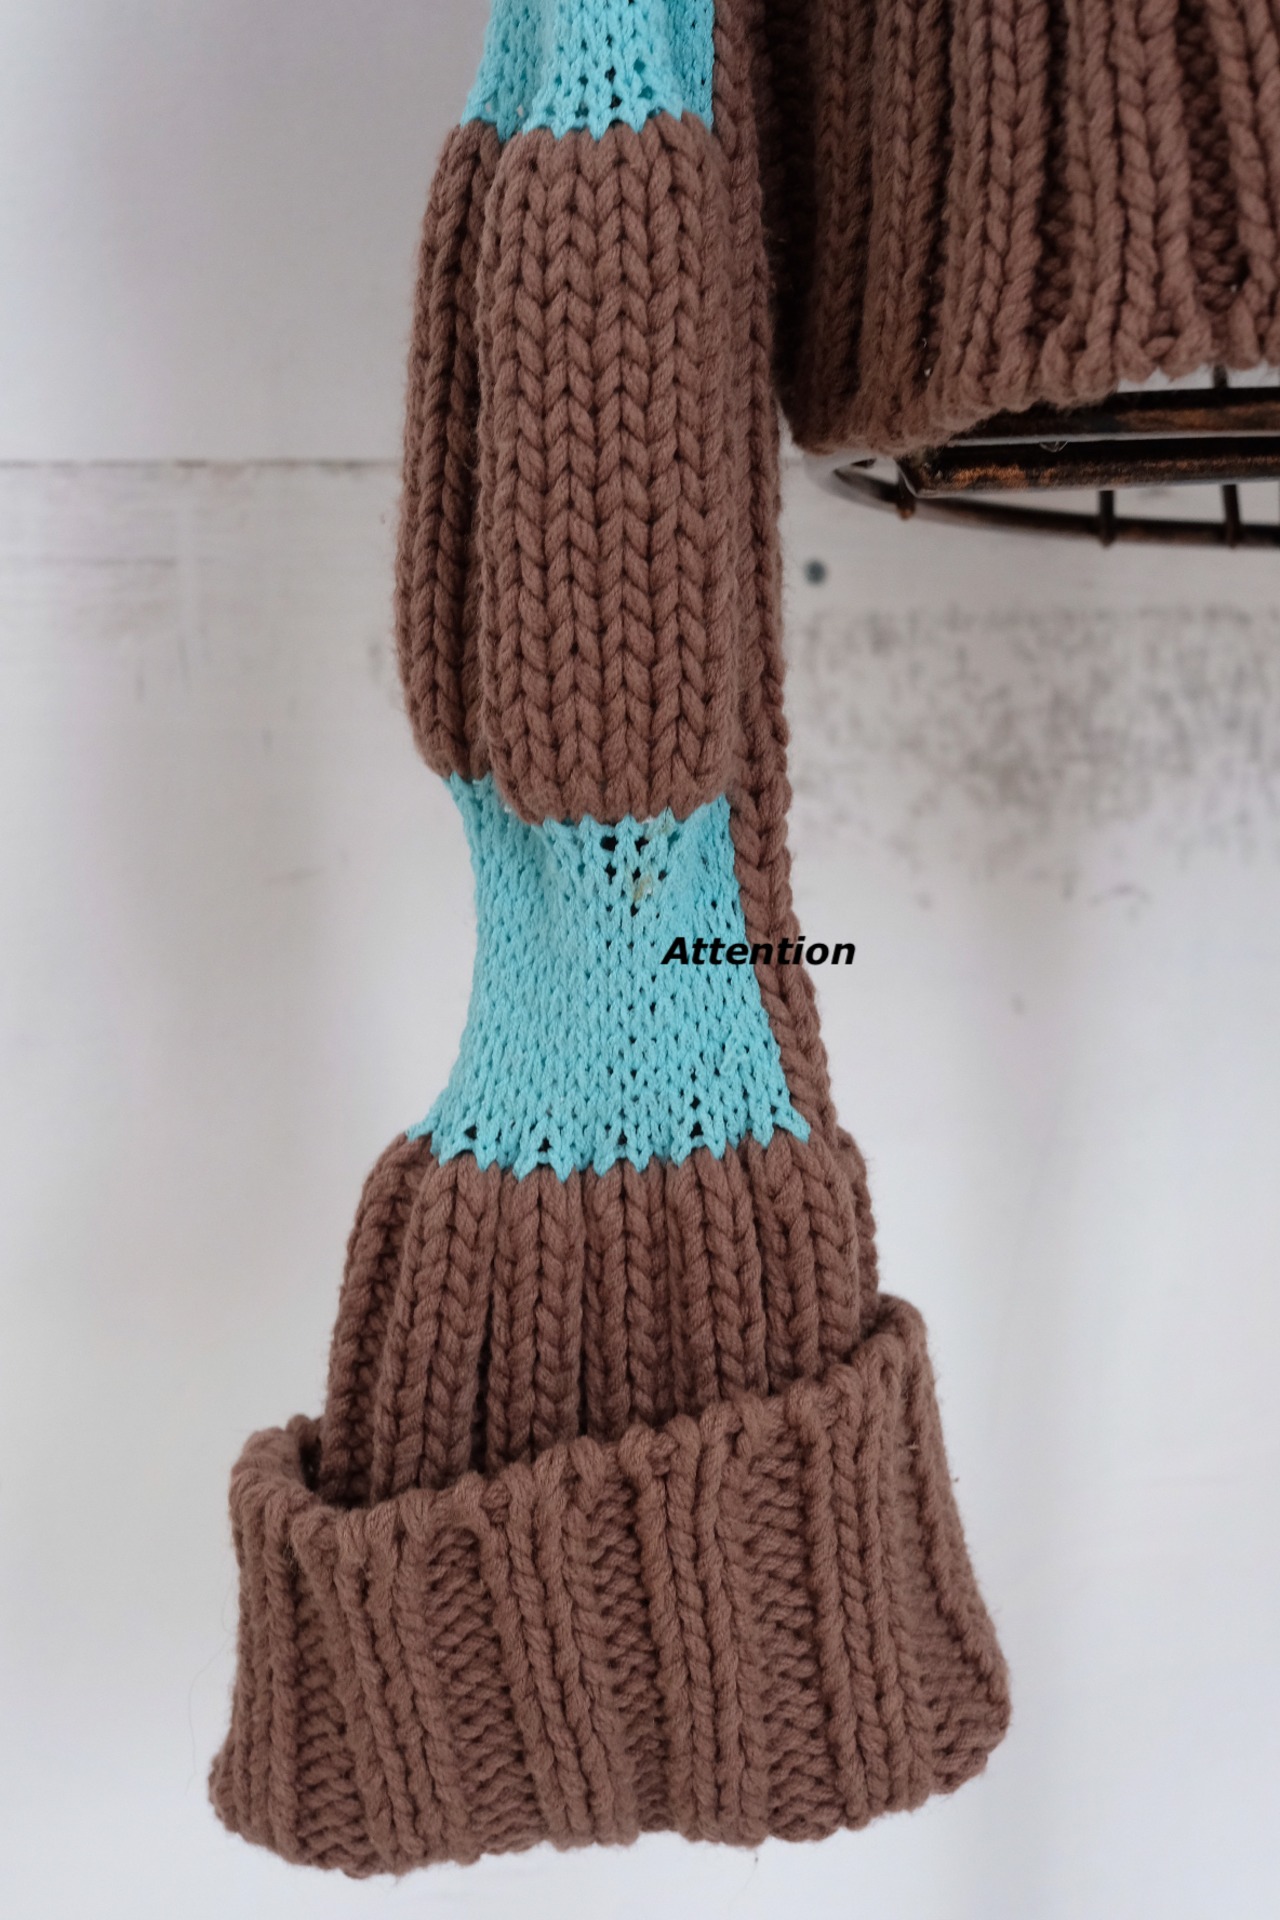 Design turtleneck knit top